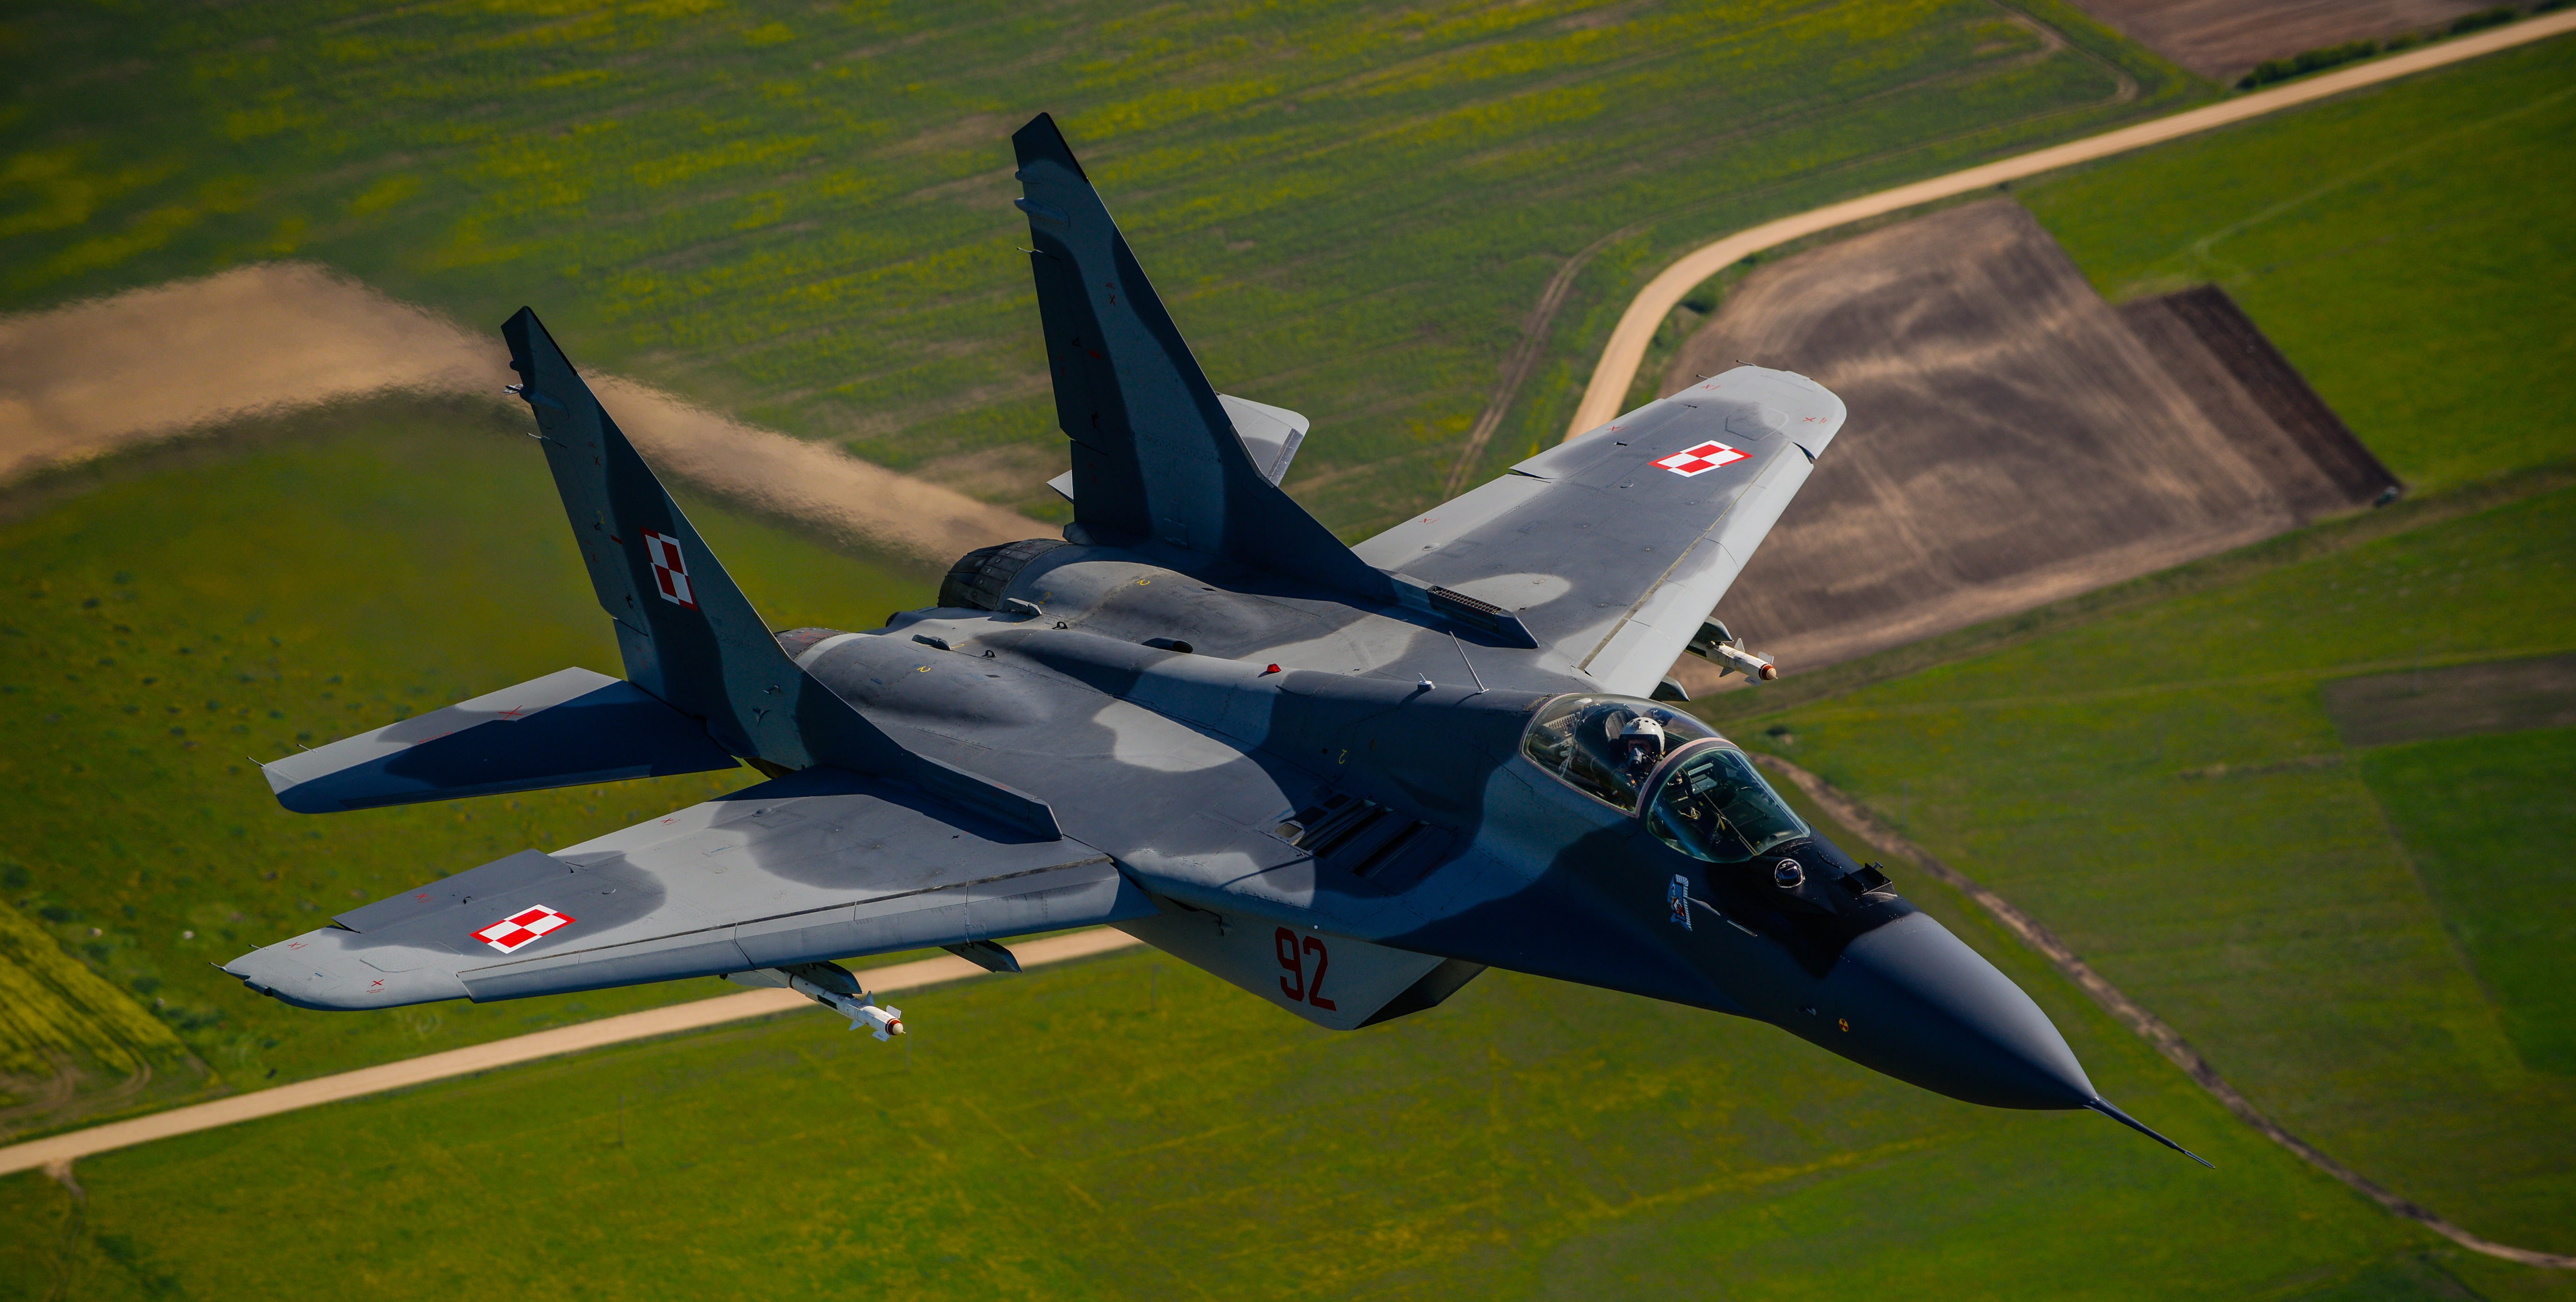 La Pologne transférera 4 avions de chasse MiG-29 à l’Ukraine dans les prochains jours, selon le président polonais